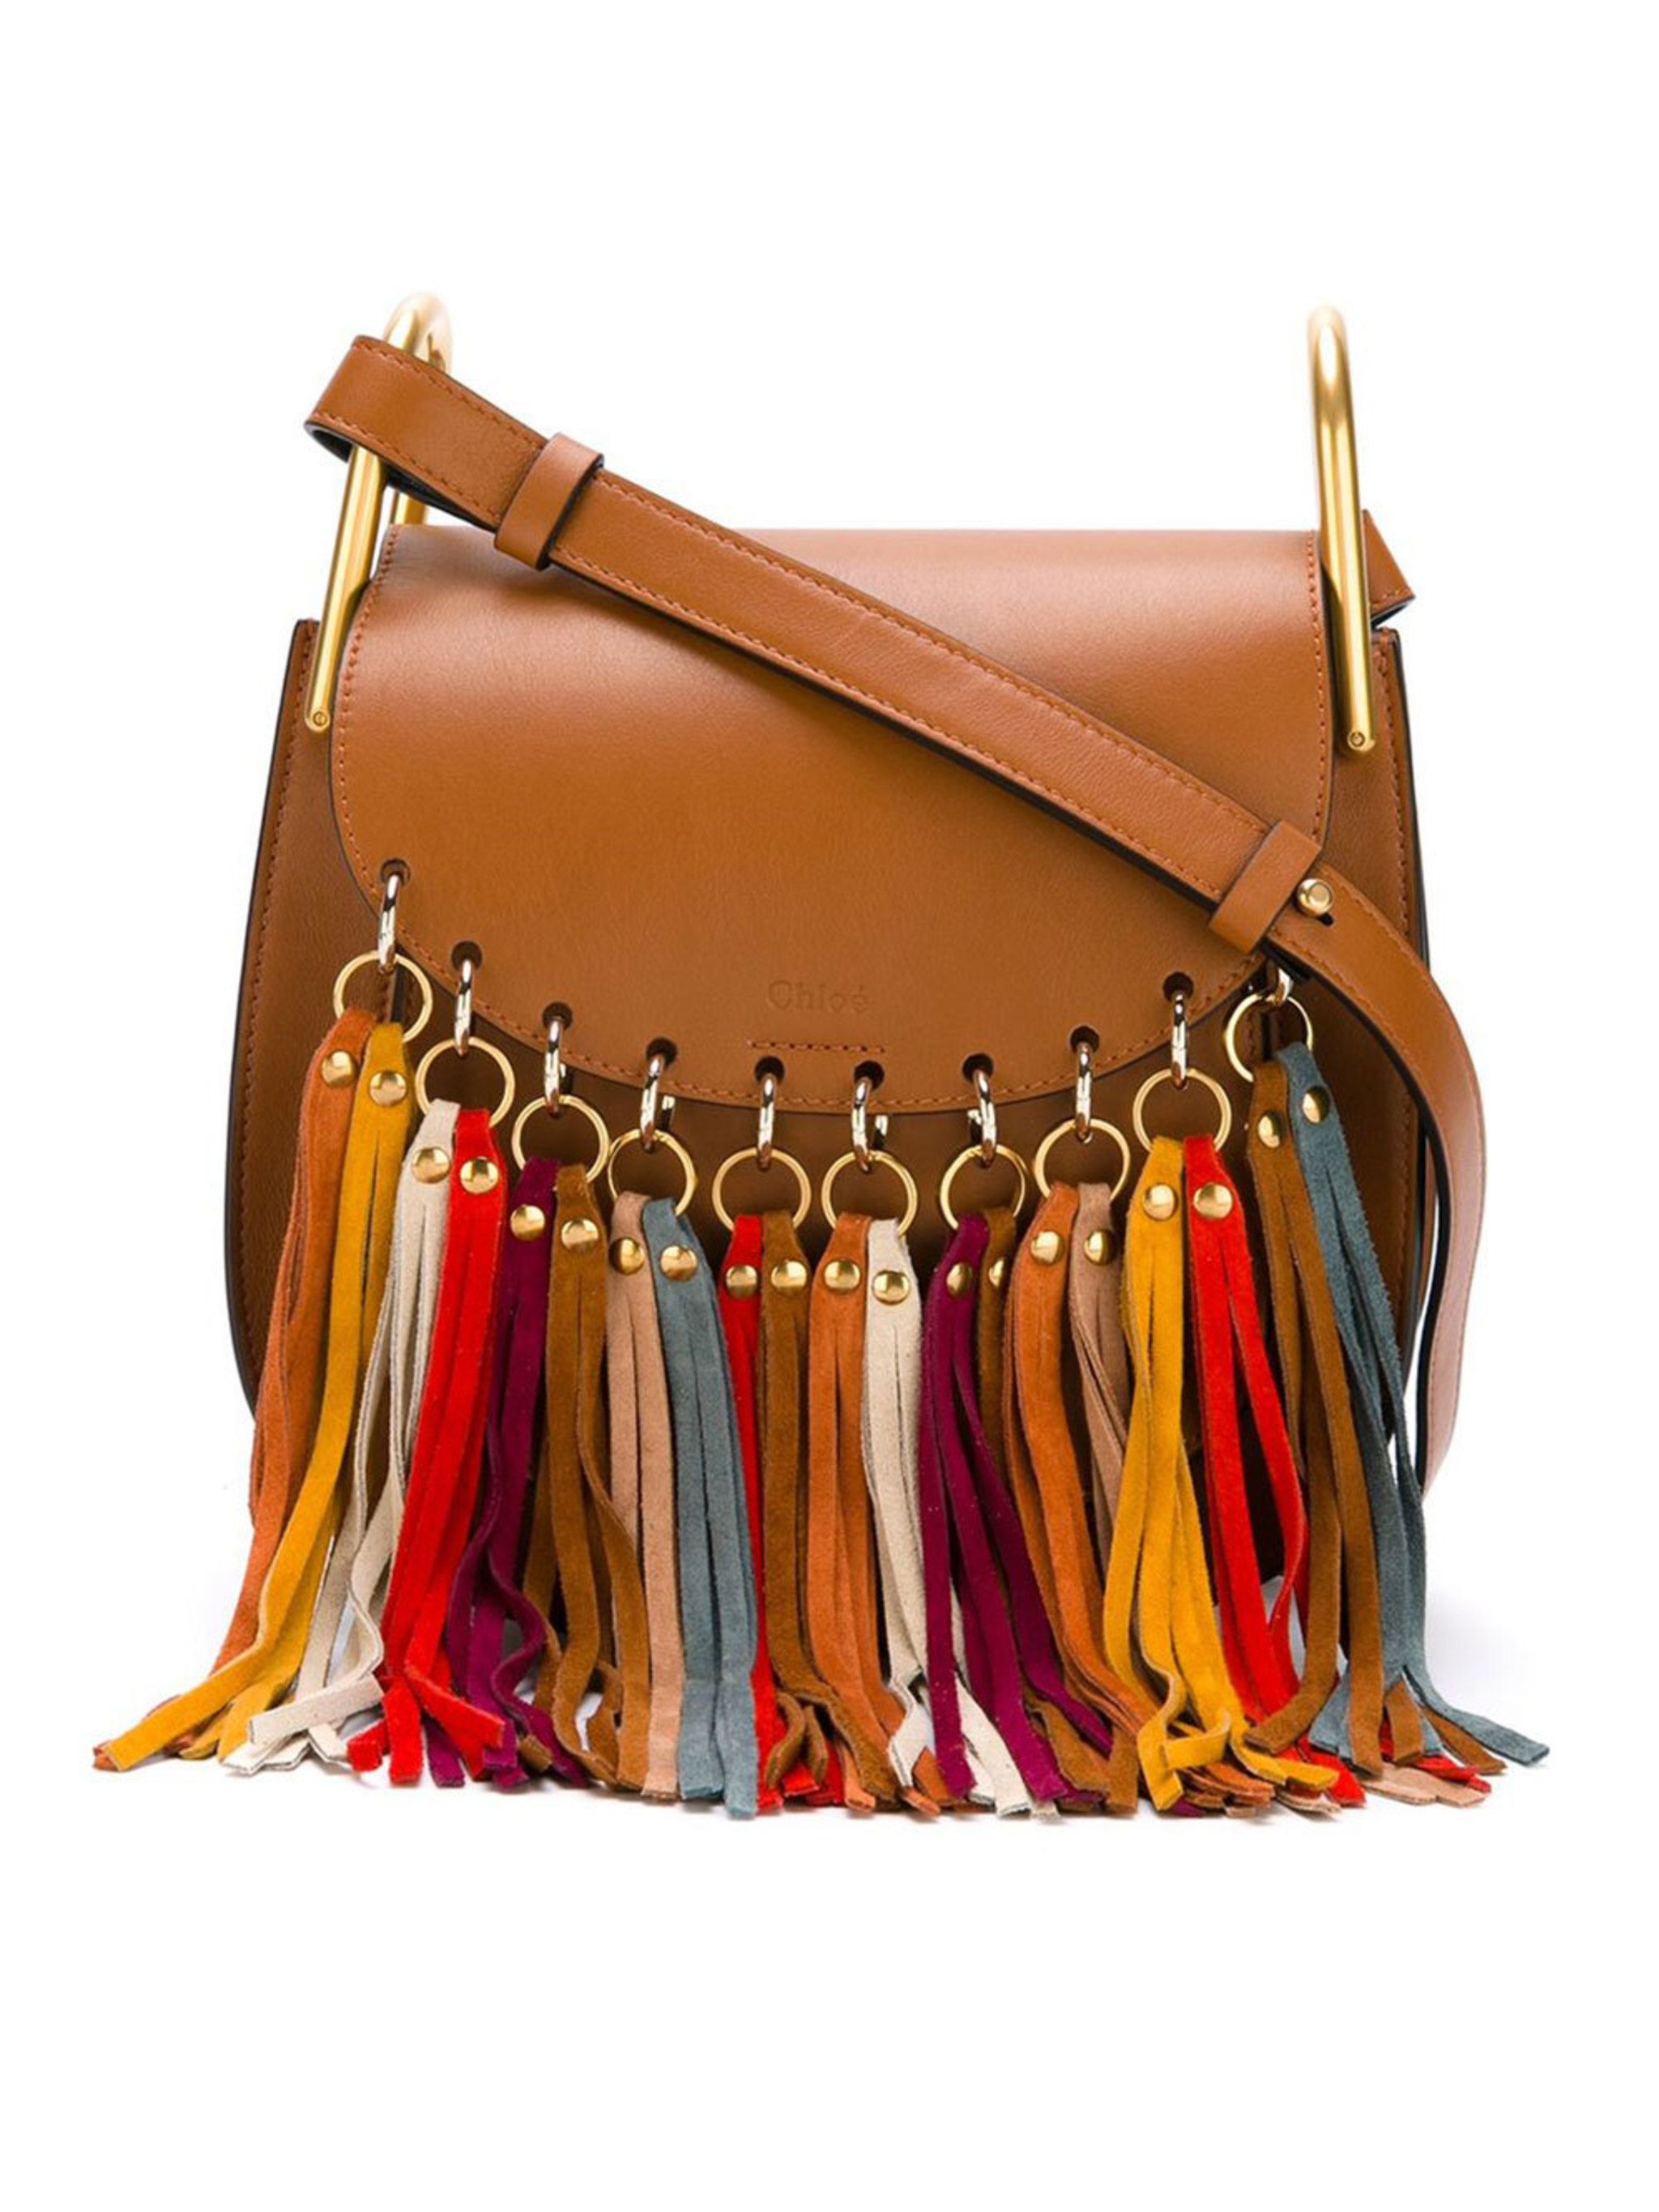 Hertog informatie Ieder Shop 8 tassen met franjes die je outfit een stuk gezelliger maken